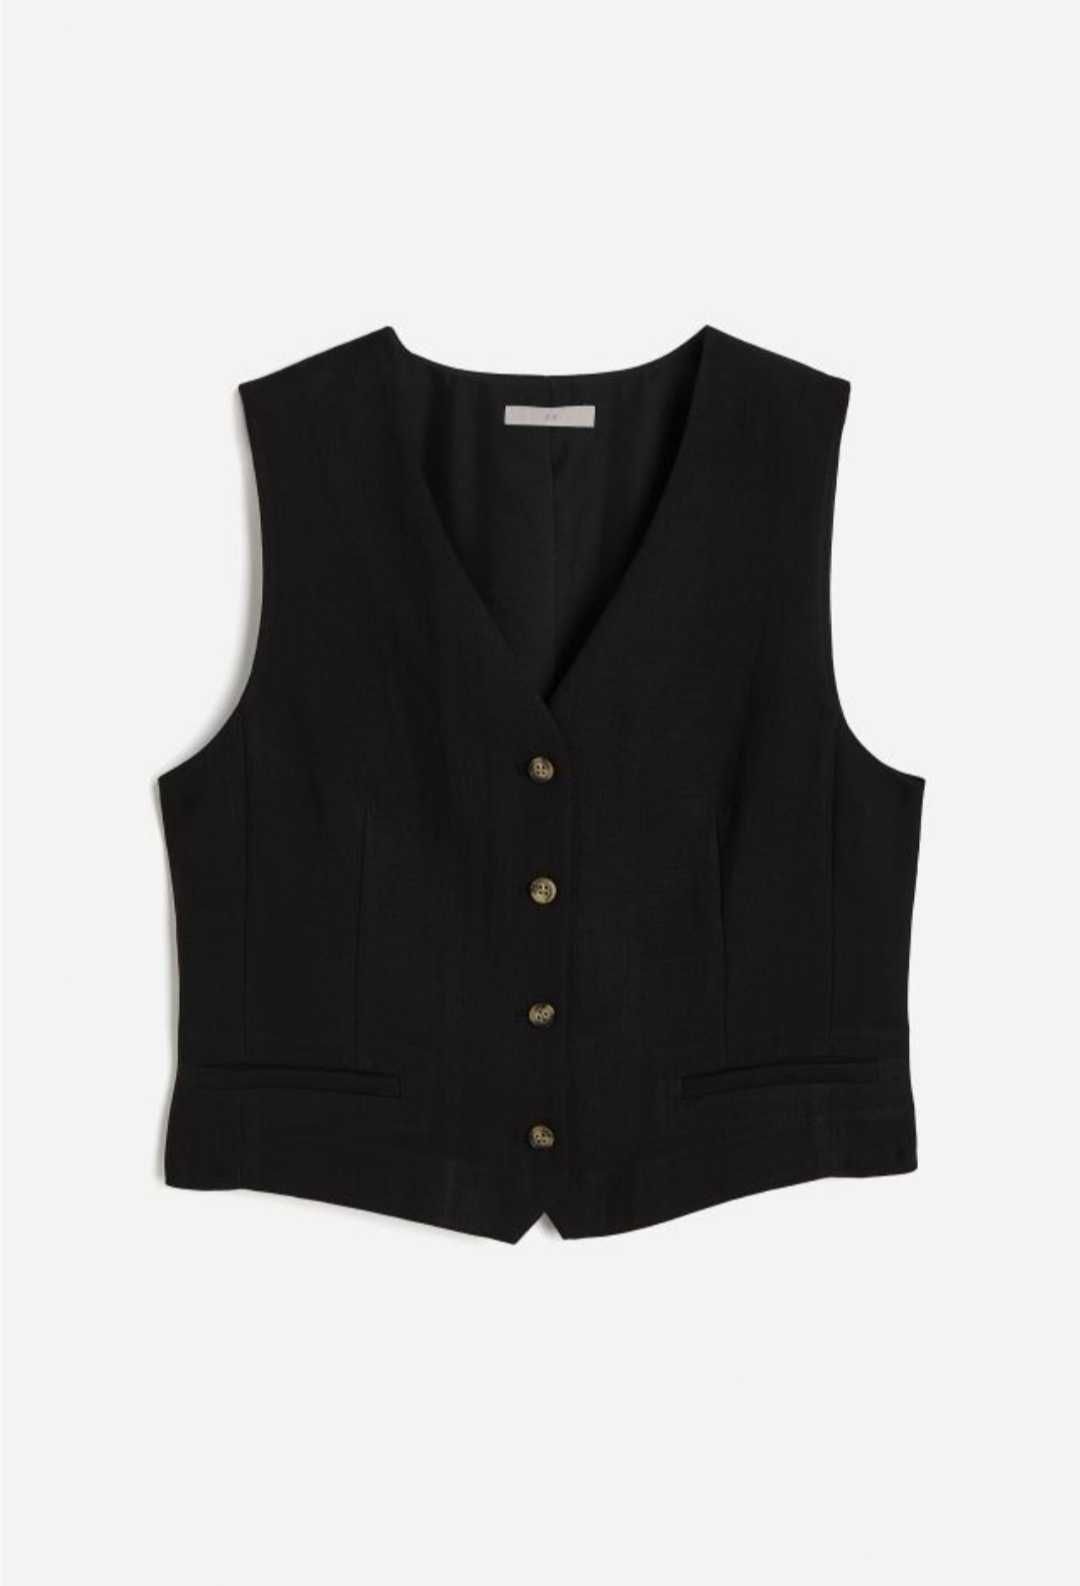 Официален дамски черен панталон H&M, размер 38, официален елек НМ